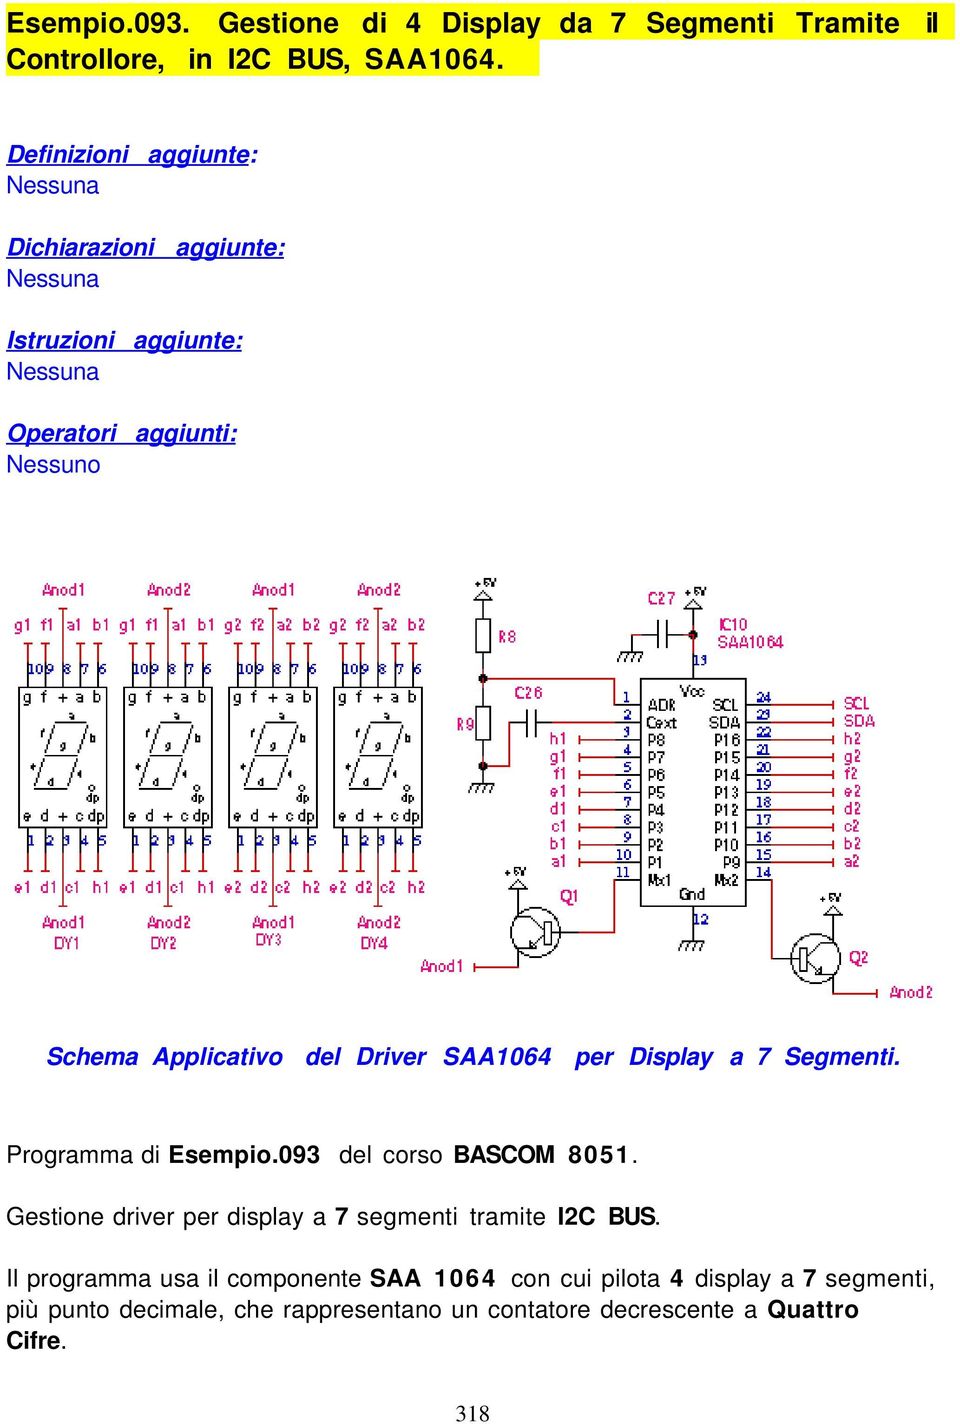 SAA1064 per Display a 7 Segmenti. Programma di Esempio.093 del corso BASCOM 8051.